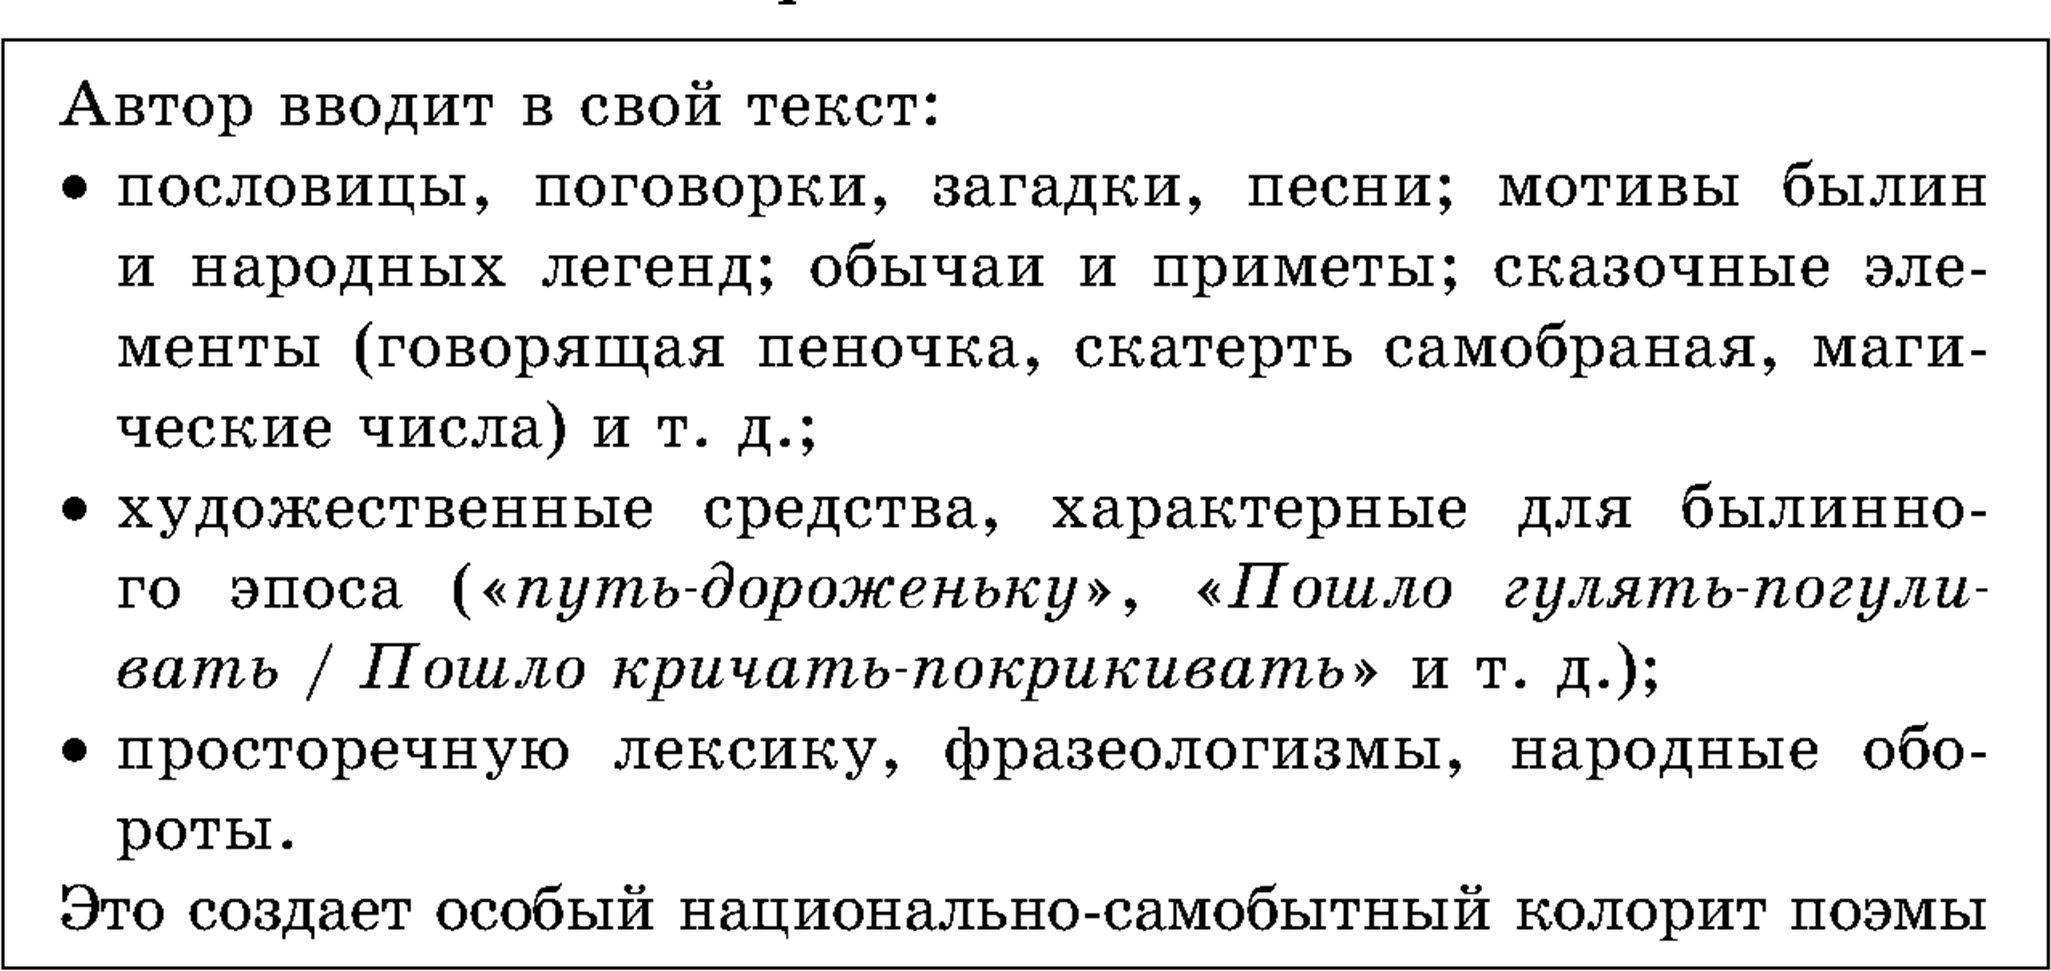 Фольклорные элементы в поэме «Кому на Руси жить хорошо»